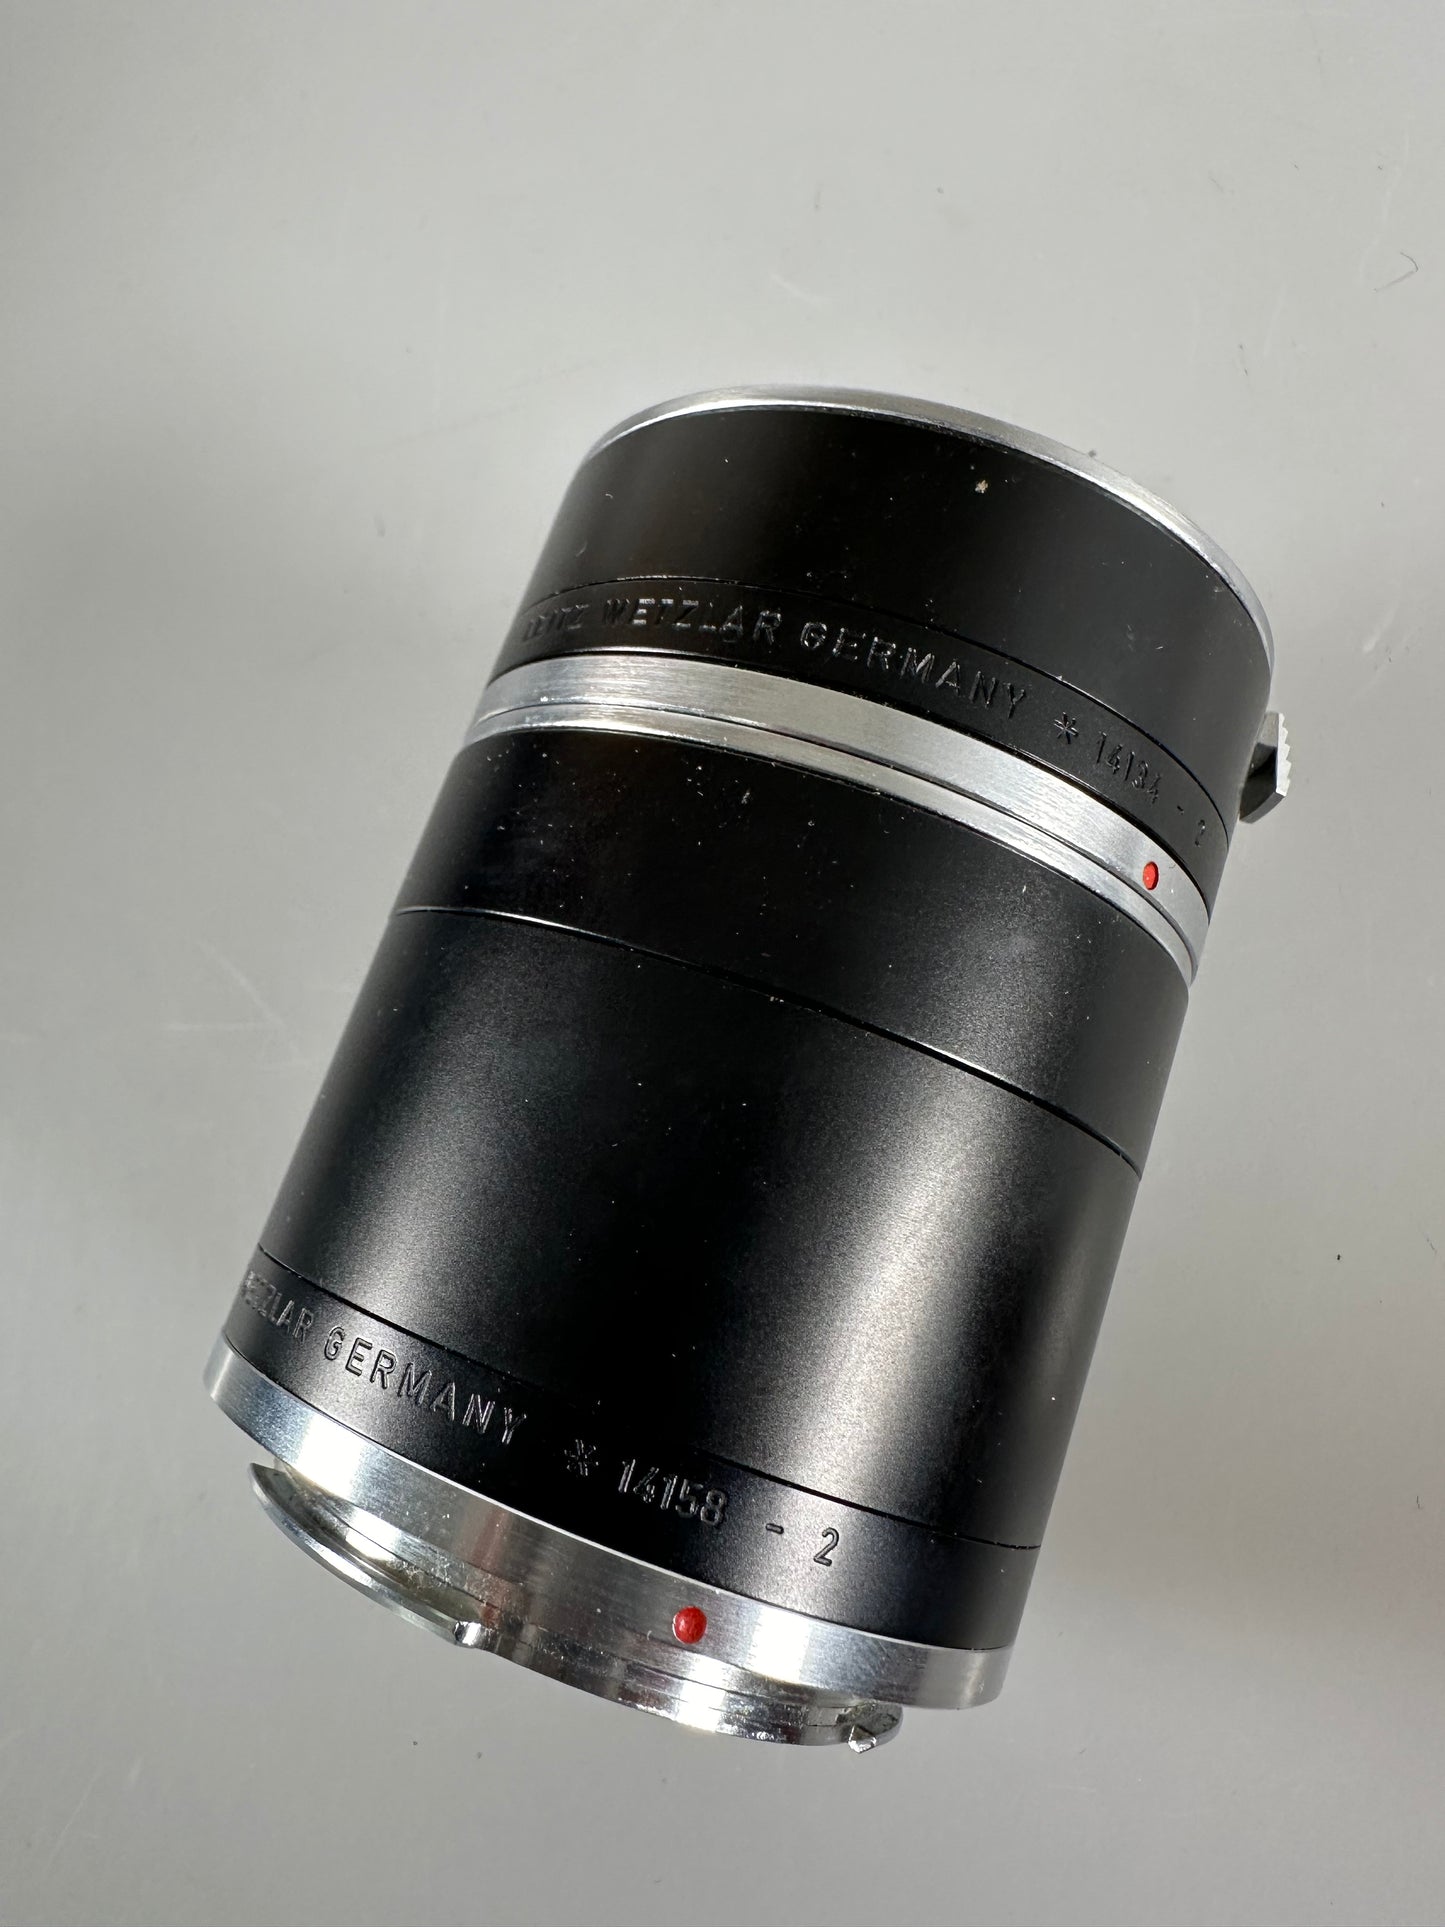 Leica R Mount Macro Extension Tube #14158 -1, 14158 -2 & 14135, 14134, 14134 - 2